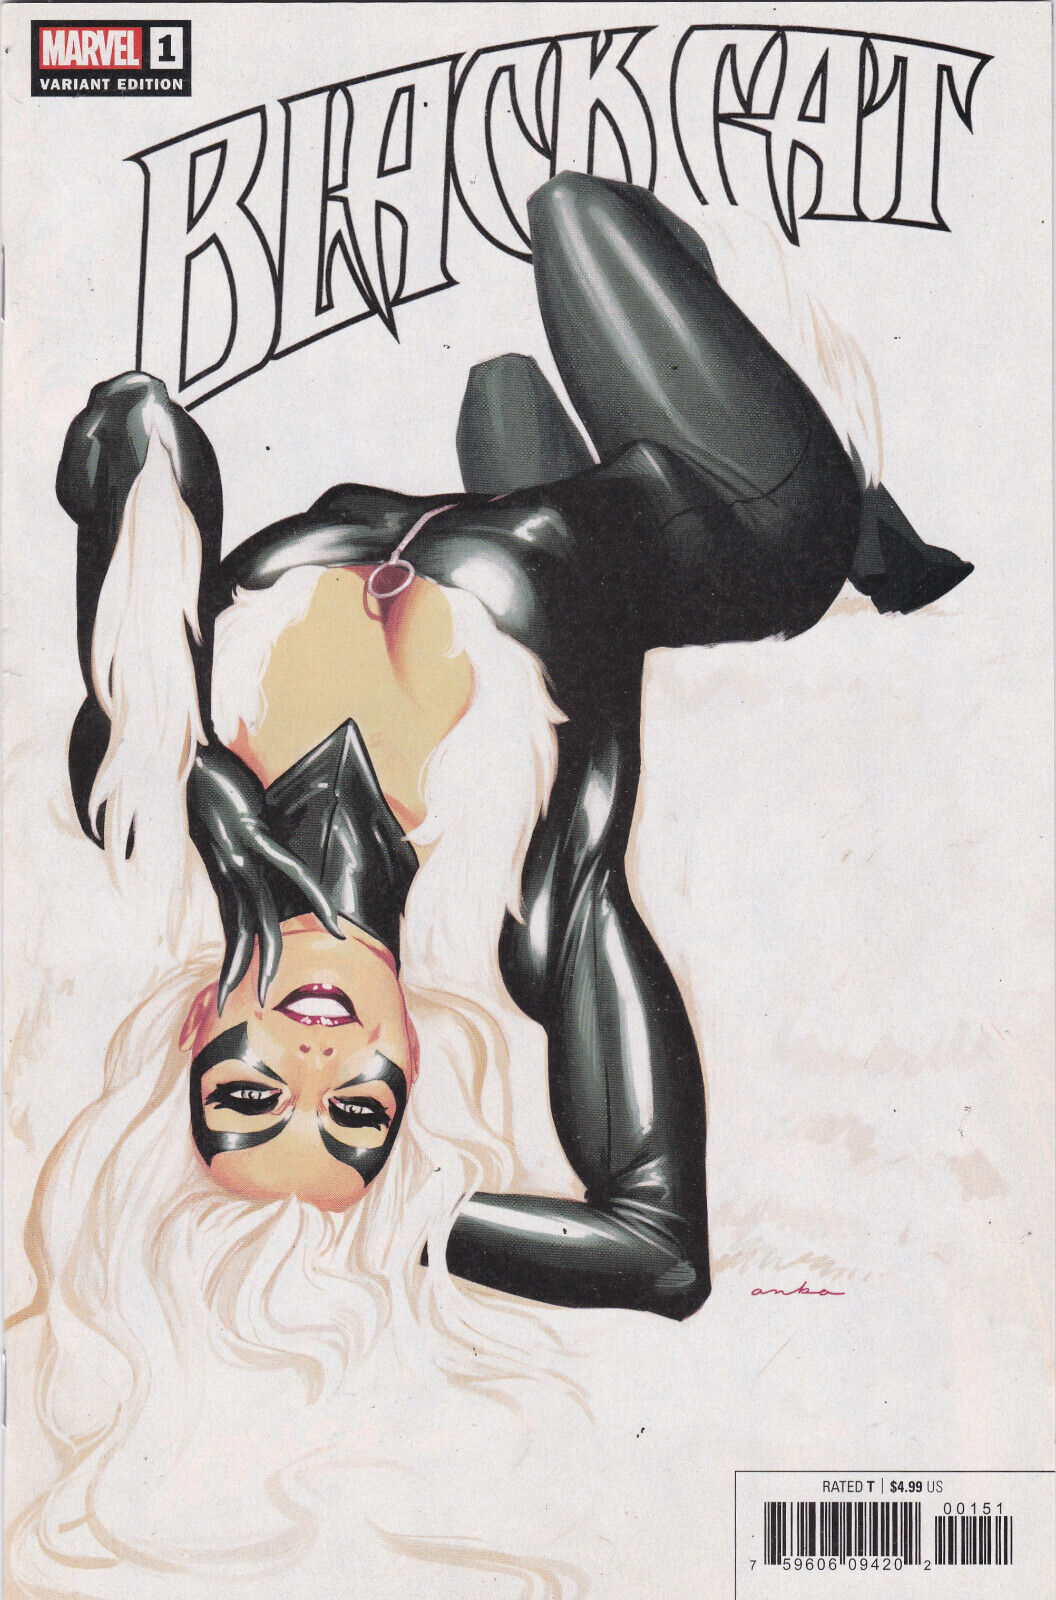 Black Cat # 1 Kris Anka Variant Cover E Marvel Comics, Vol. 1 2019 High Grade